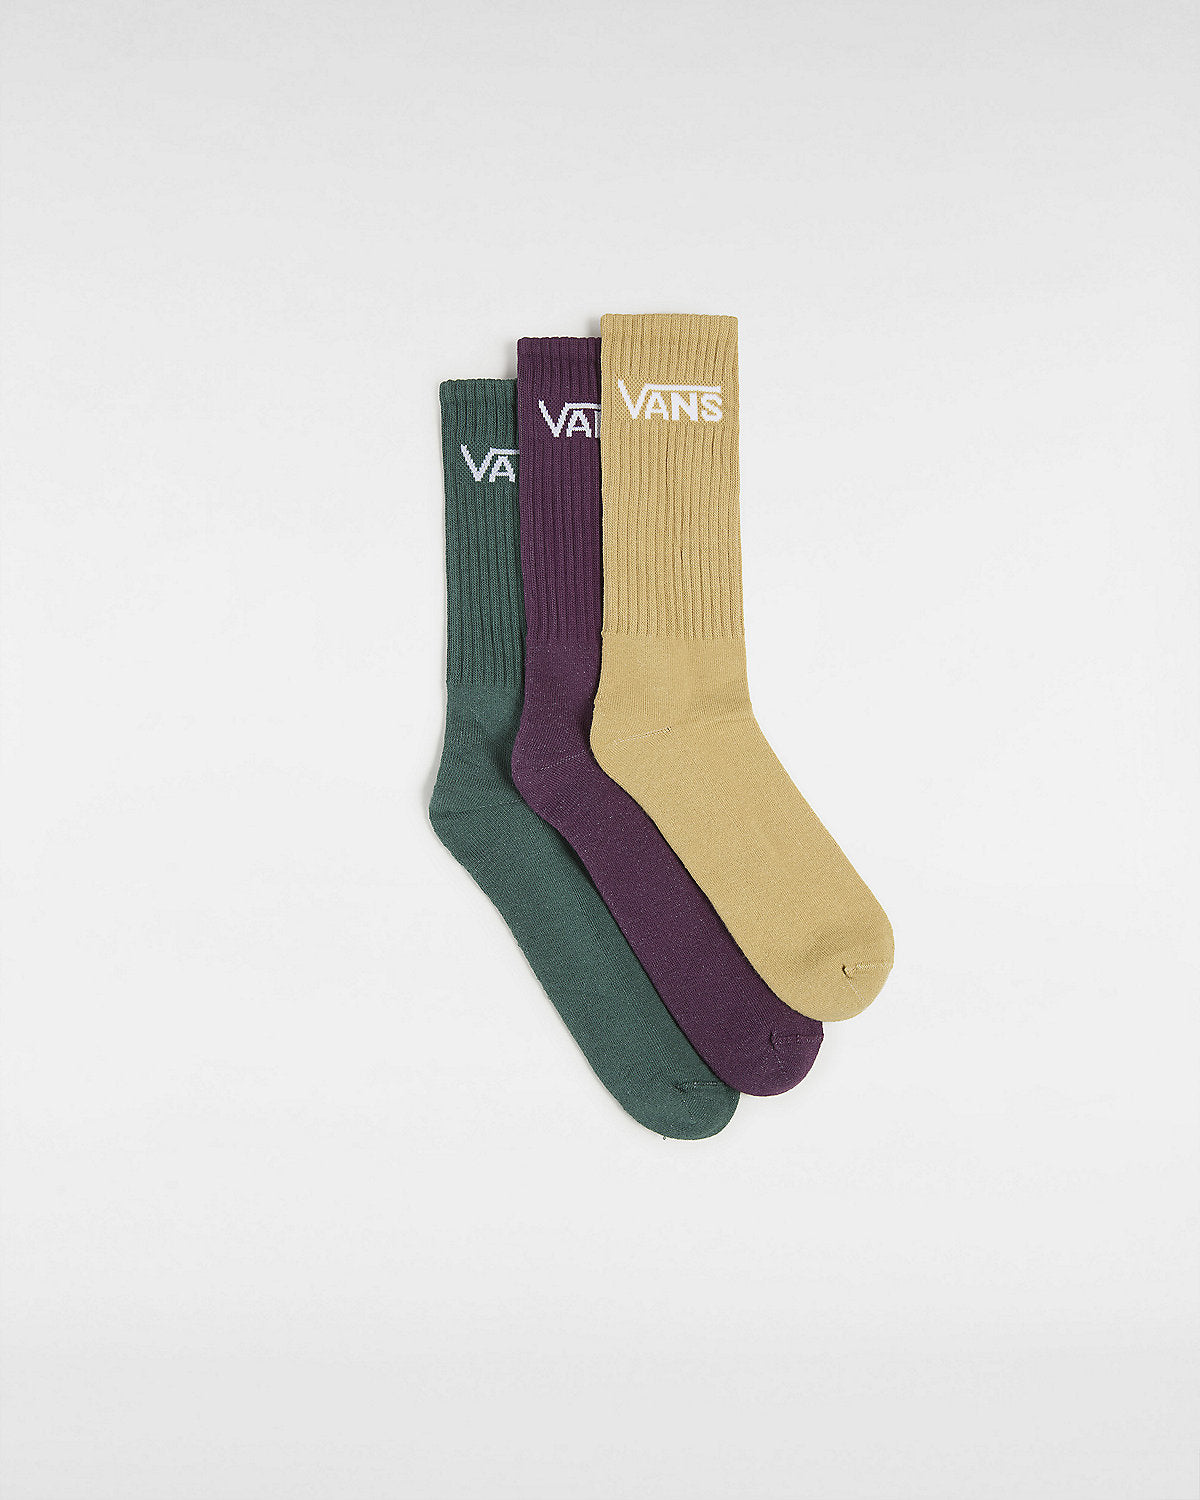 VANS Mens Classic Crew Socks (3 Pairs) - Antelope / Green / Red